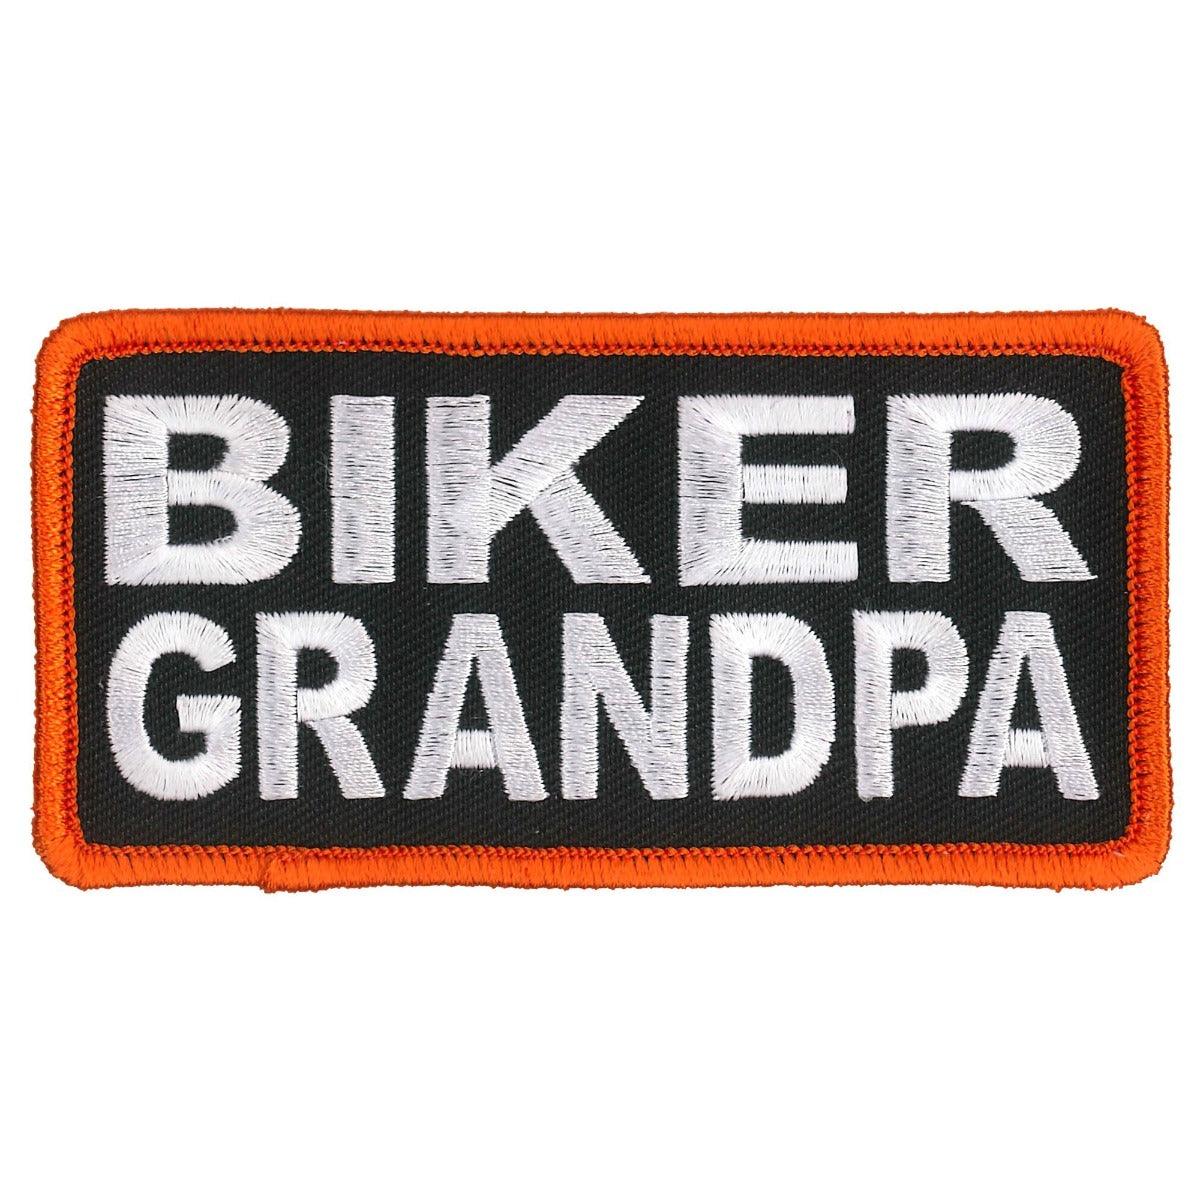 Hot Leathers Biker Grandpa Patch - American Legend Rider